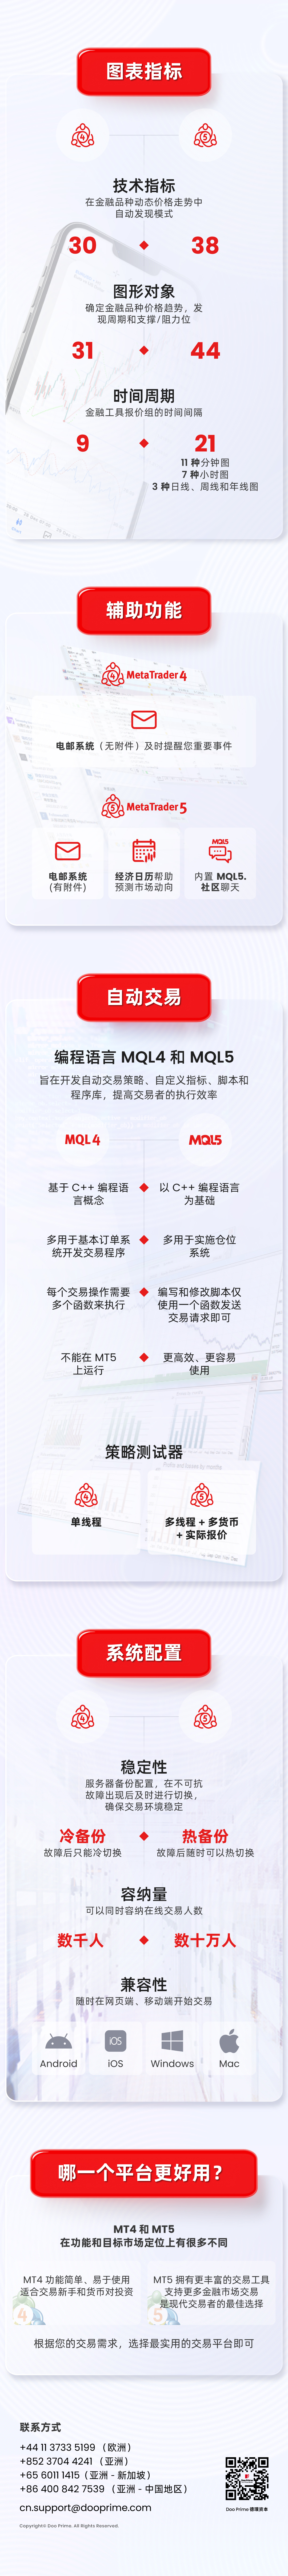 了解 MT4 与 MT5 的不同之处，选择最适合您的交易平台